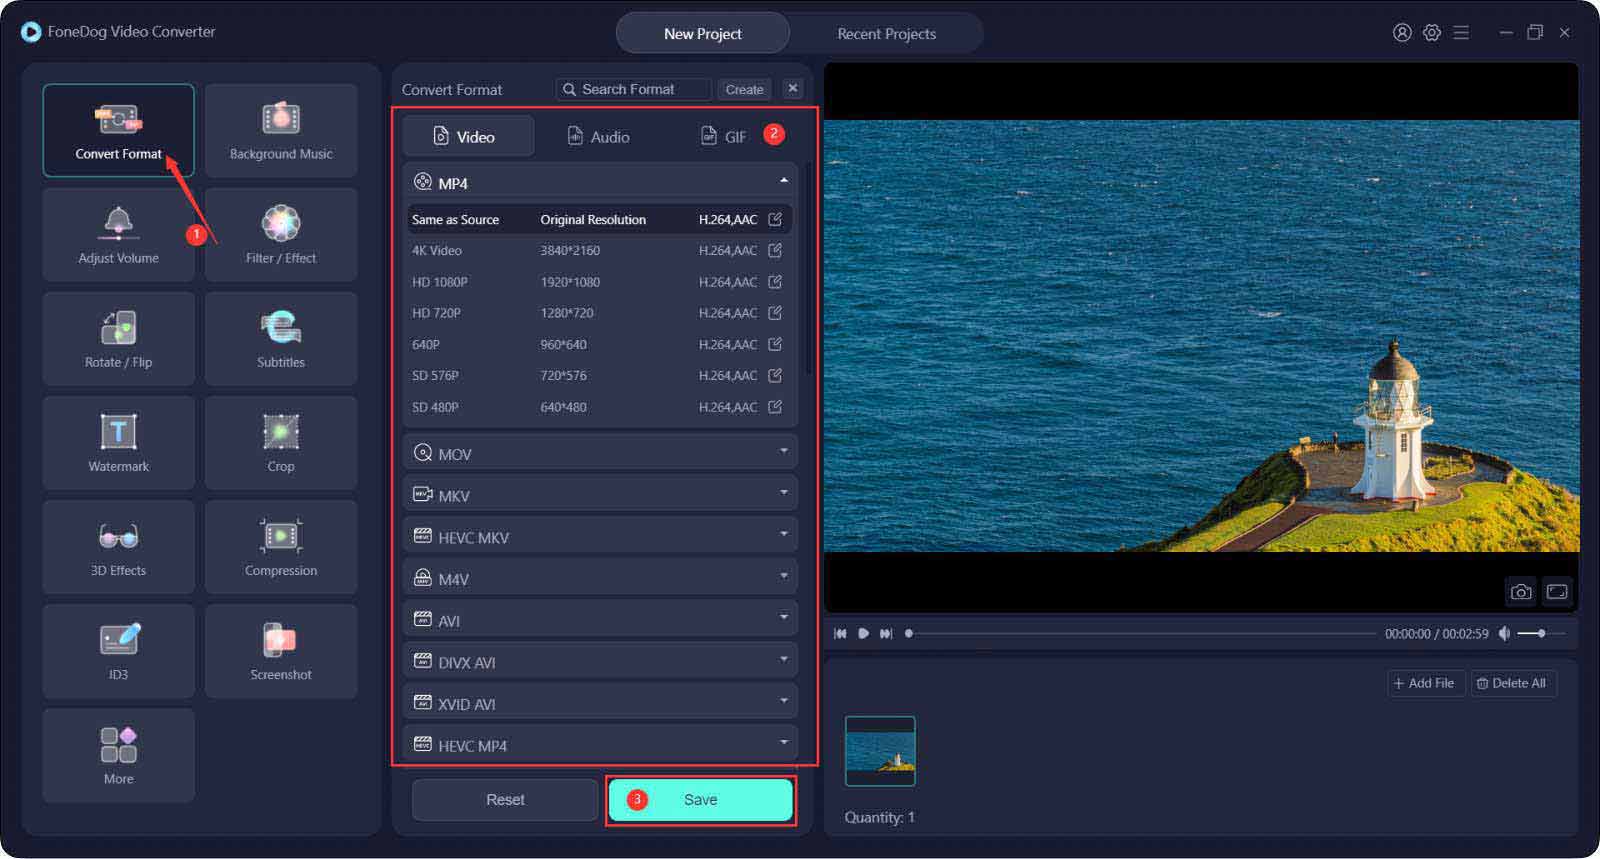 使用 FoneDog 視頻轉換器提高視頻分辨率